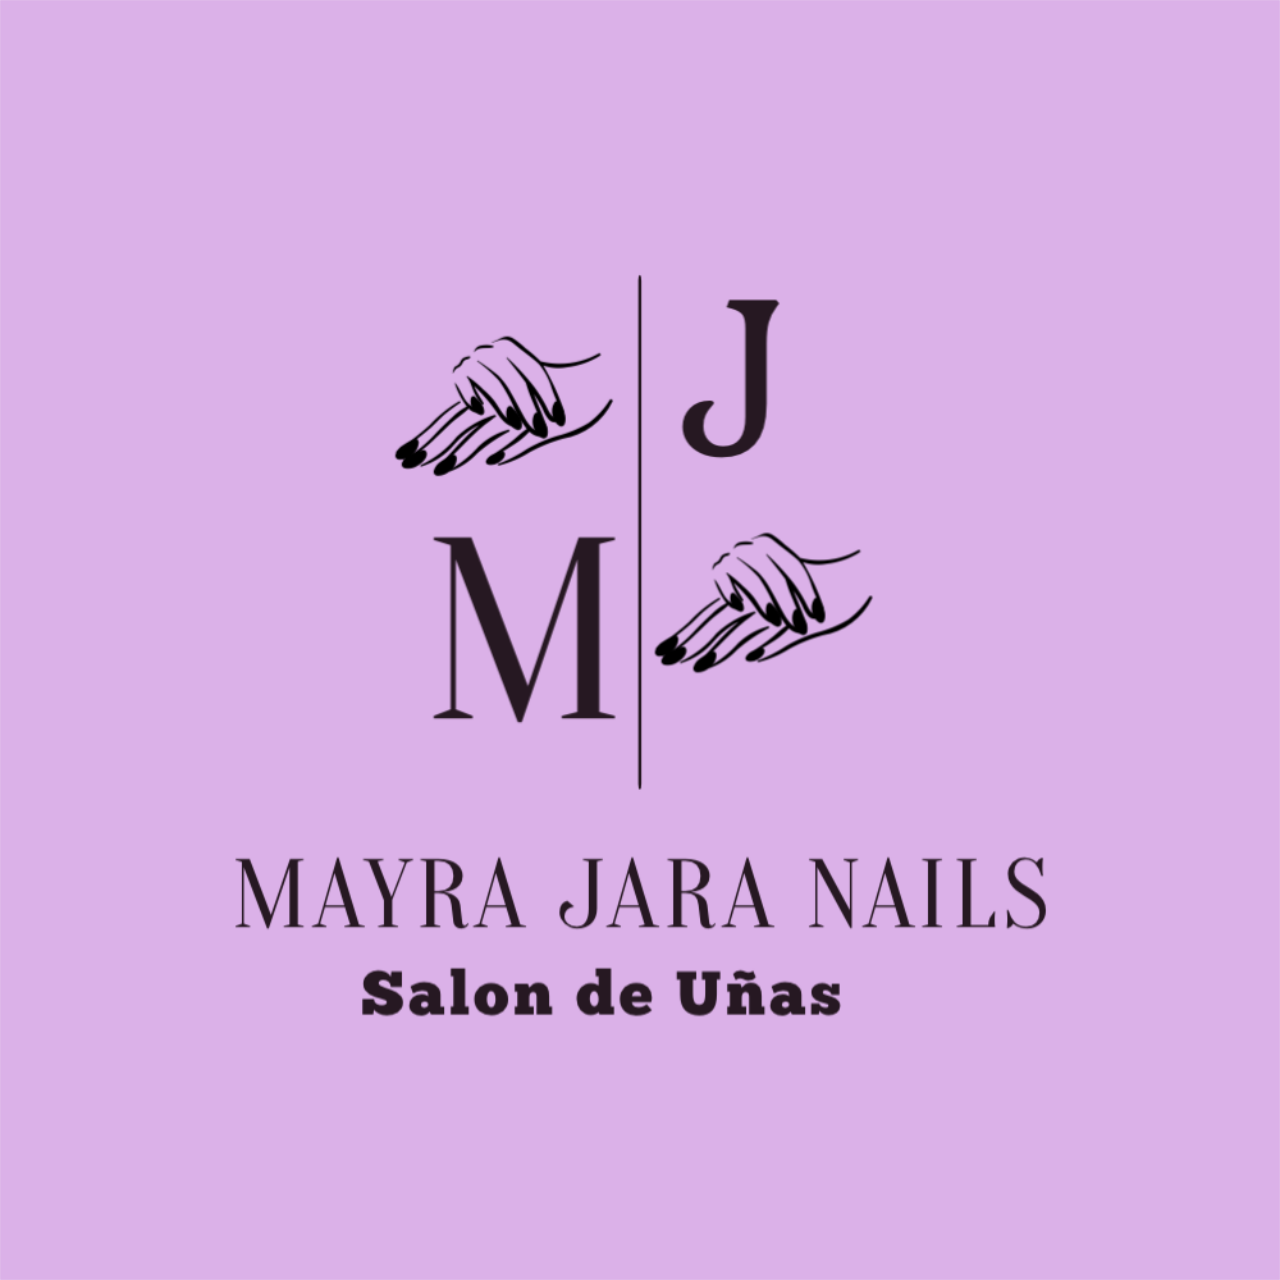 MAYRA JARA NAILS's web page